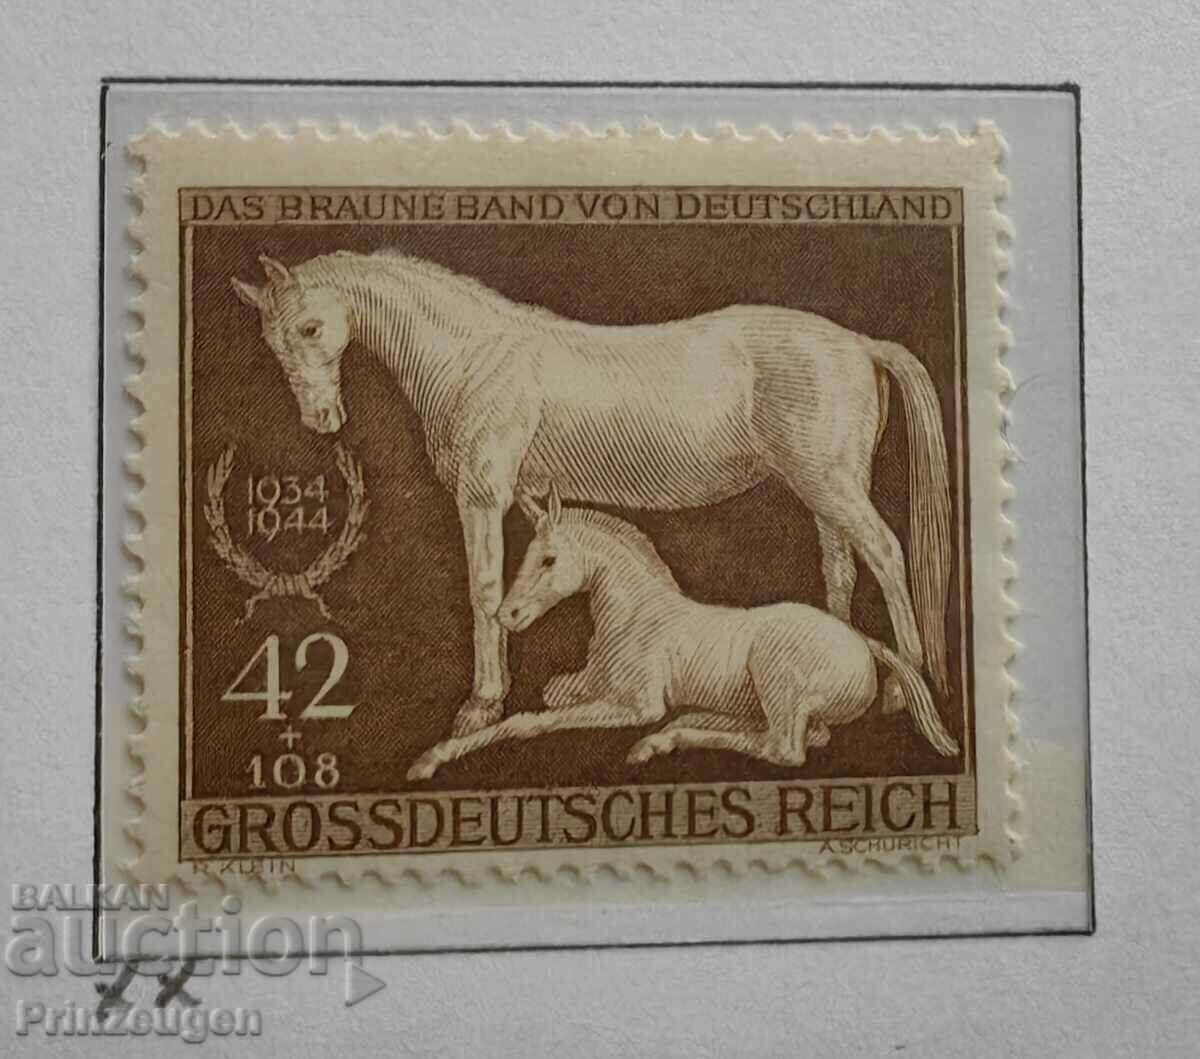 Γερμανία - Τρίτο Ράιχ - 1944 - σειρά γραμματοσήμων